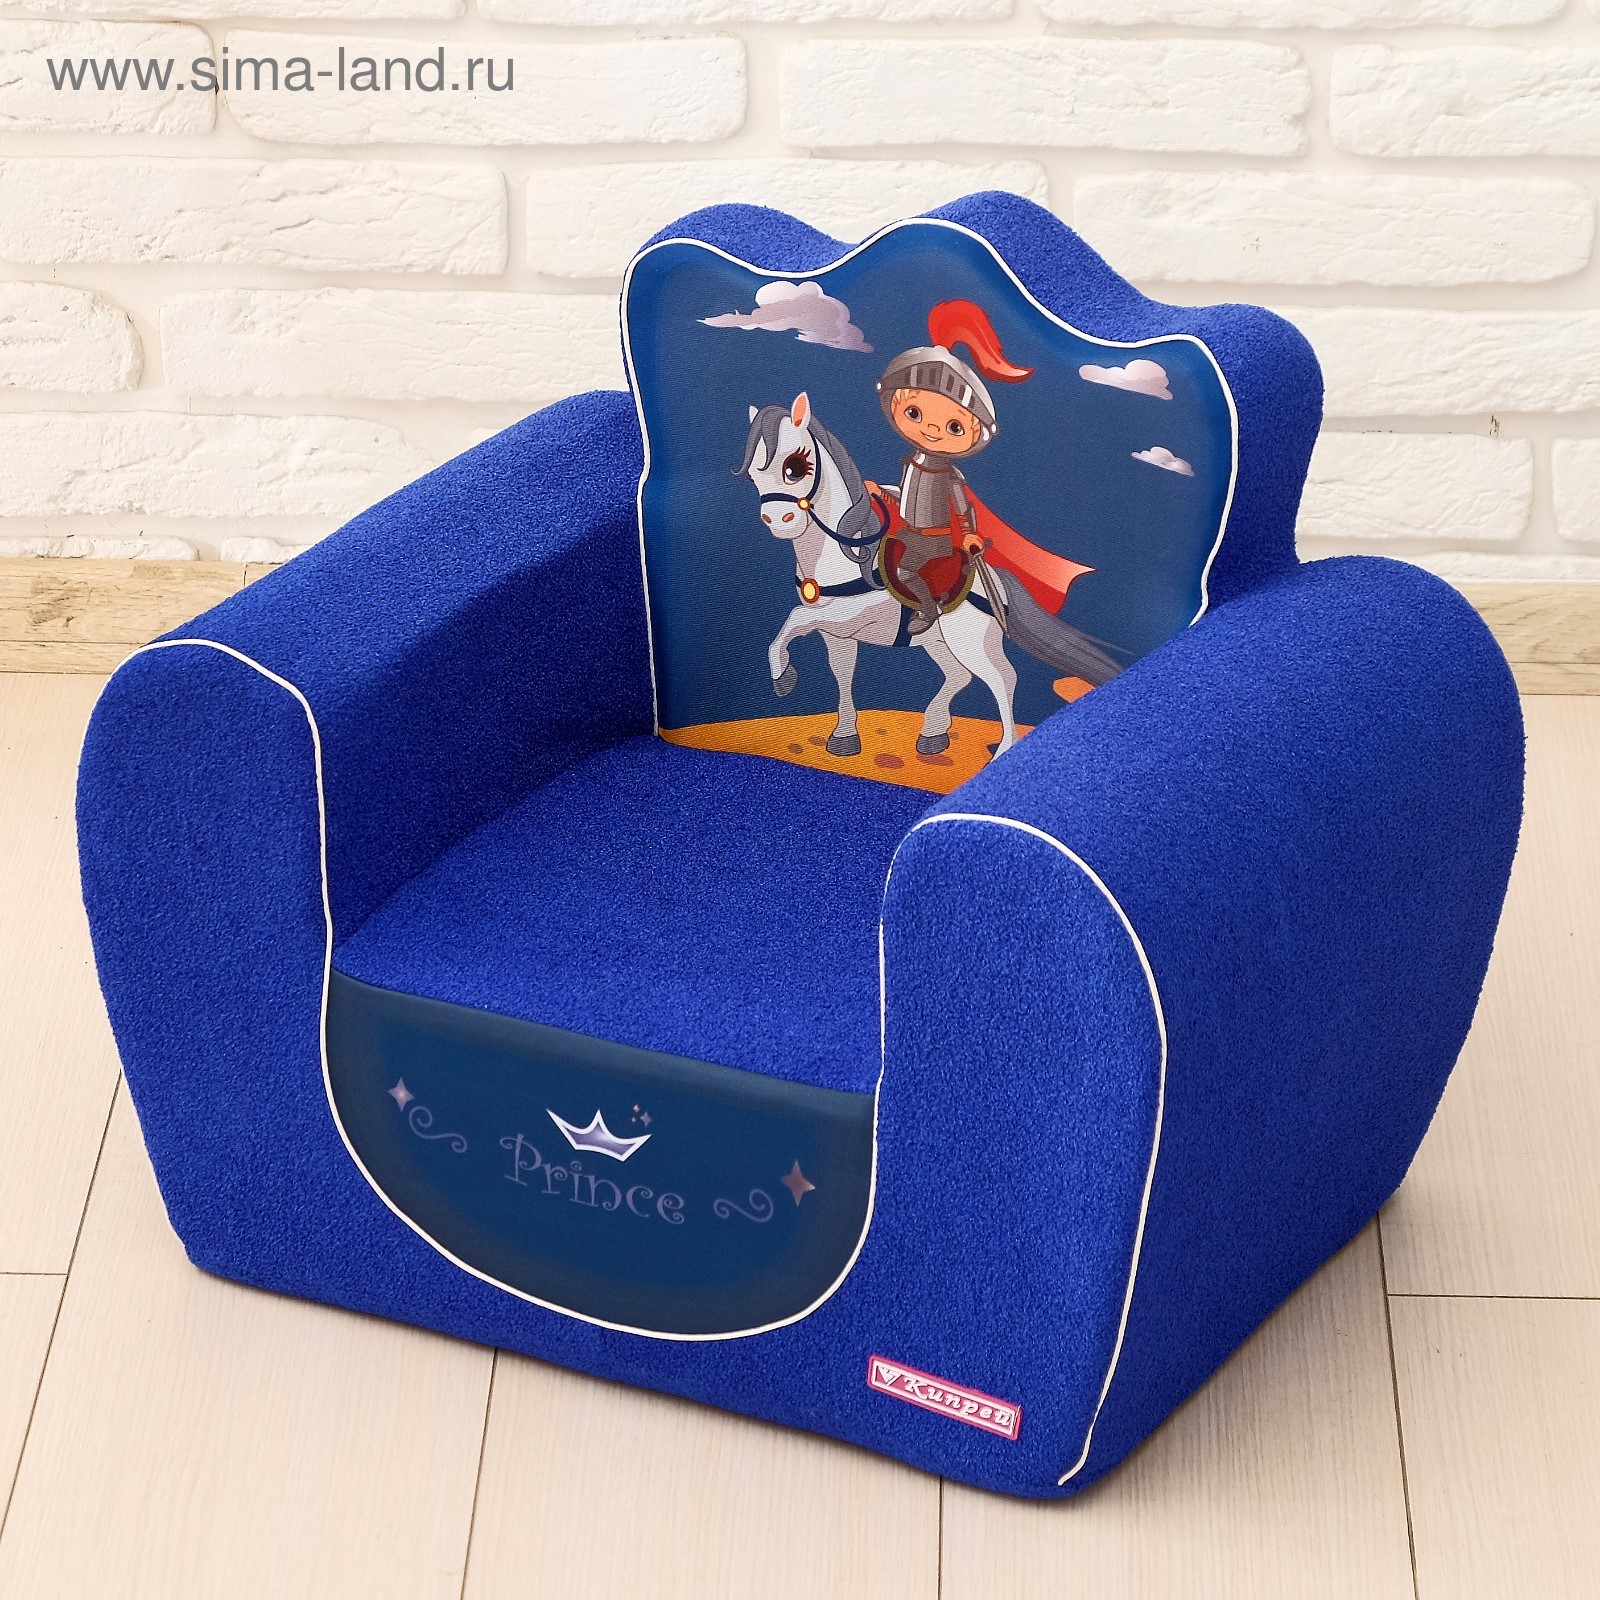 Мягкая игрушка-кресло super boy, цвет синий